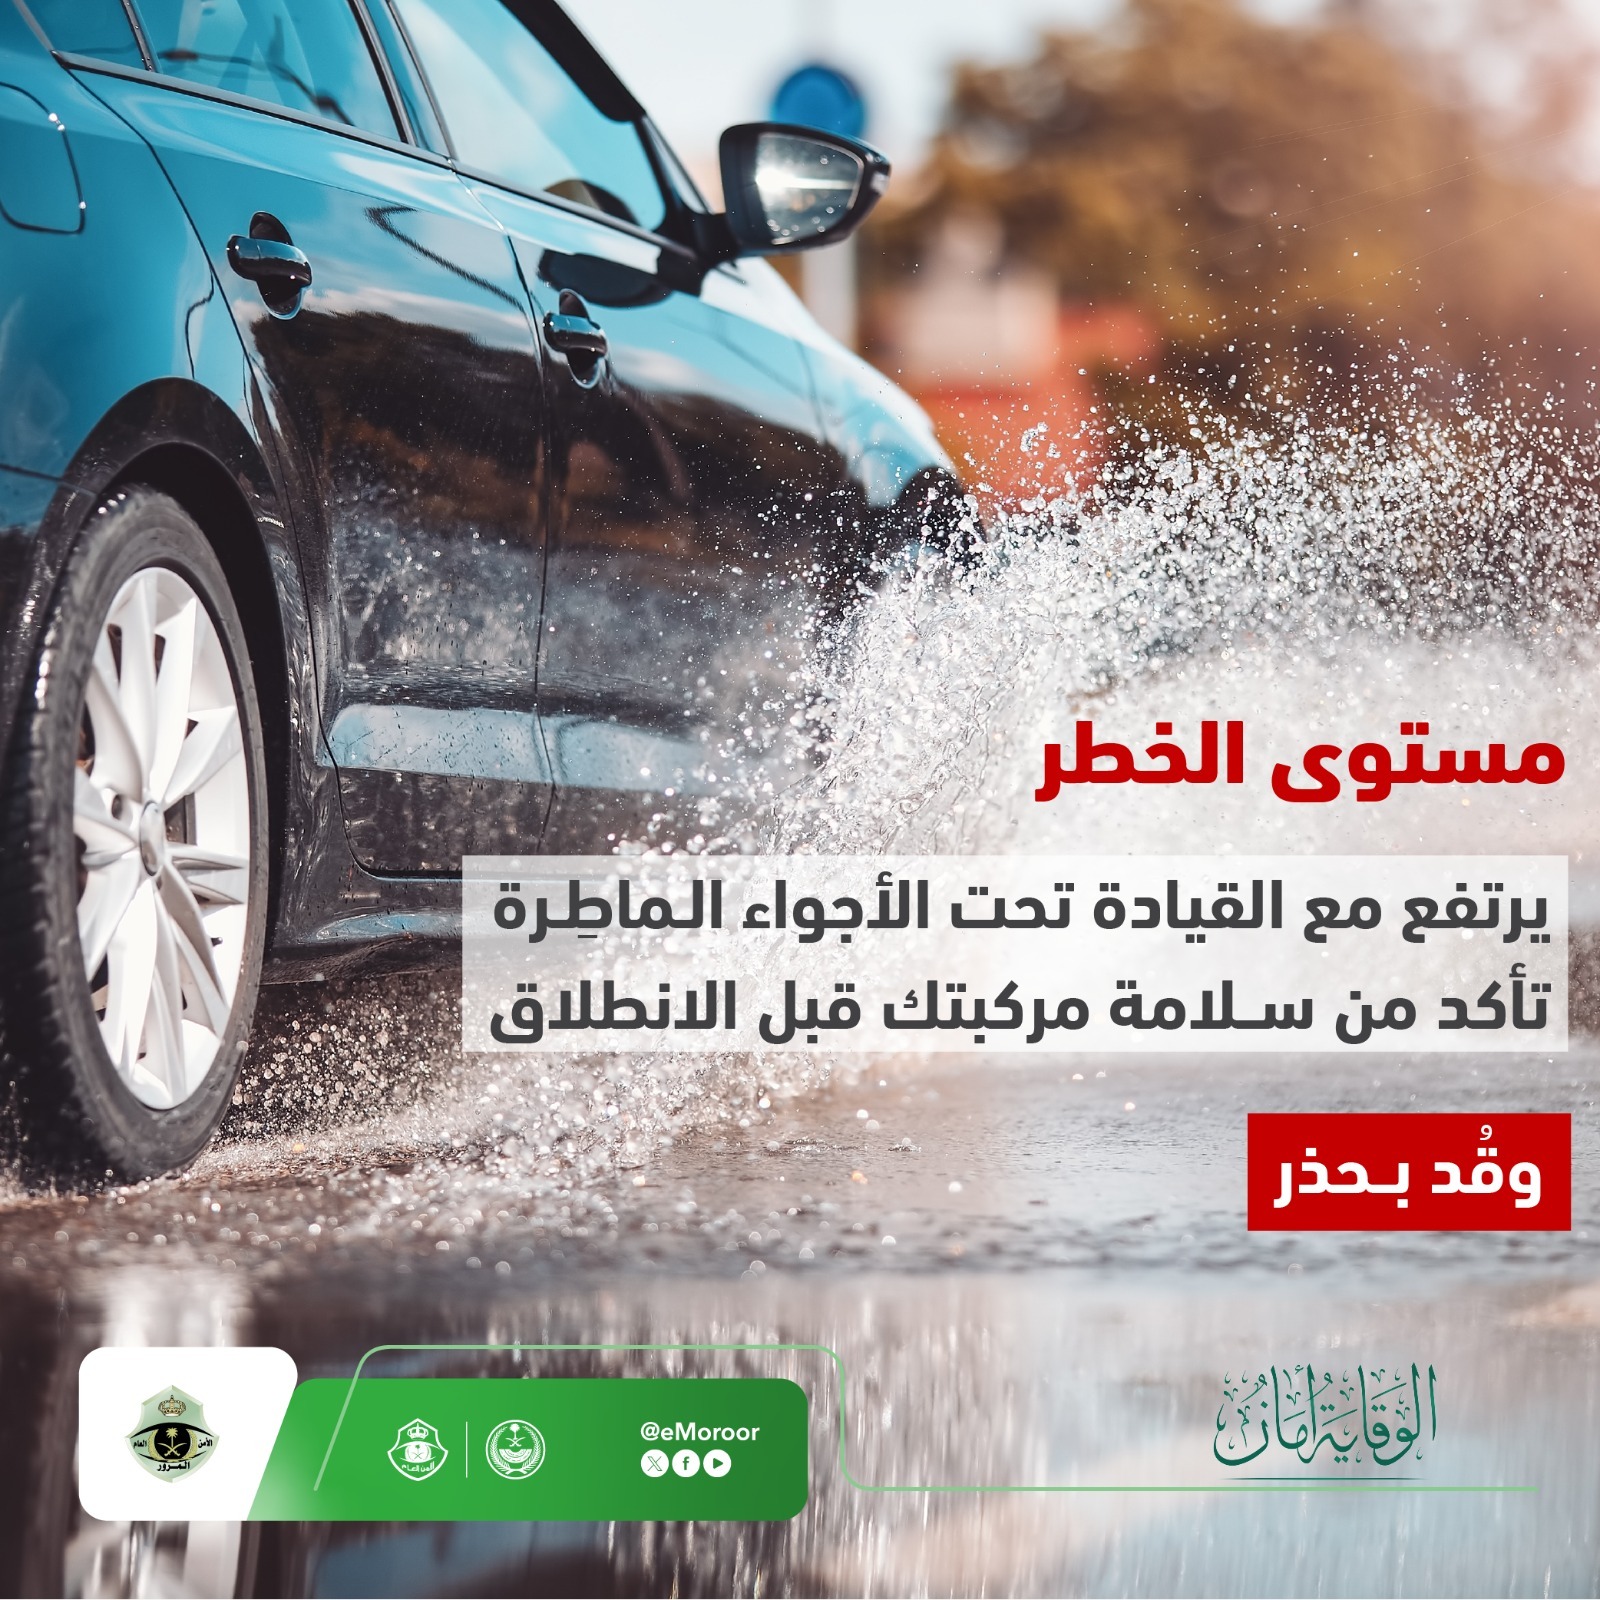 "المرور" يوجه 4 نصائح لقيادة آمنة أثناء الأمطار لتجنب الحوادث 2